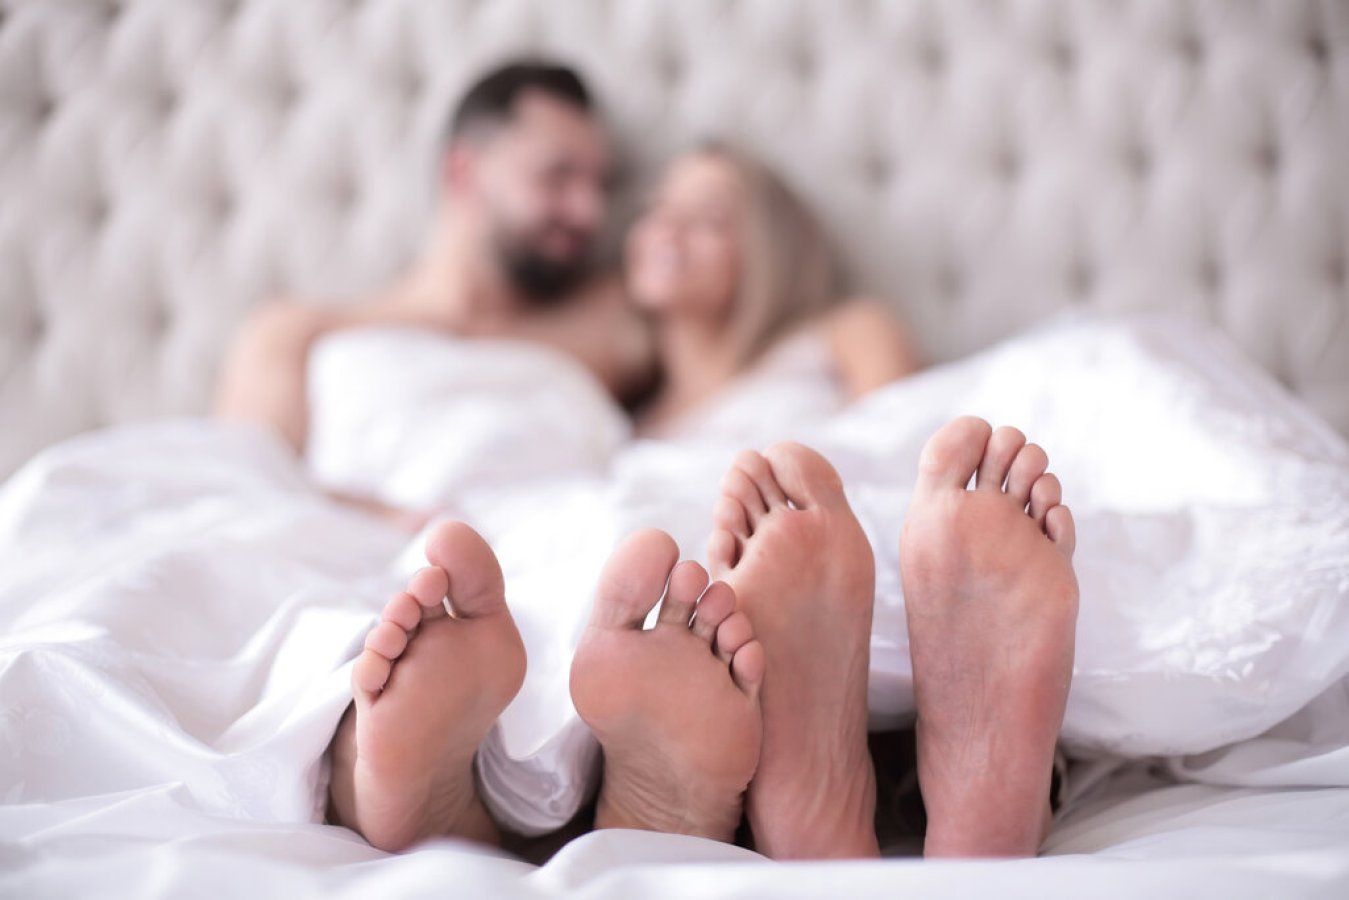 Μια νέα μελέτη δείχνει πόσο συχνά οι παντρεμένοι κάνουν σεξ